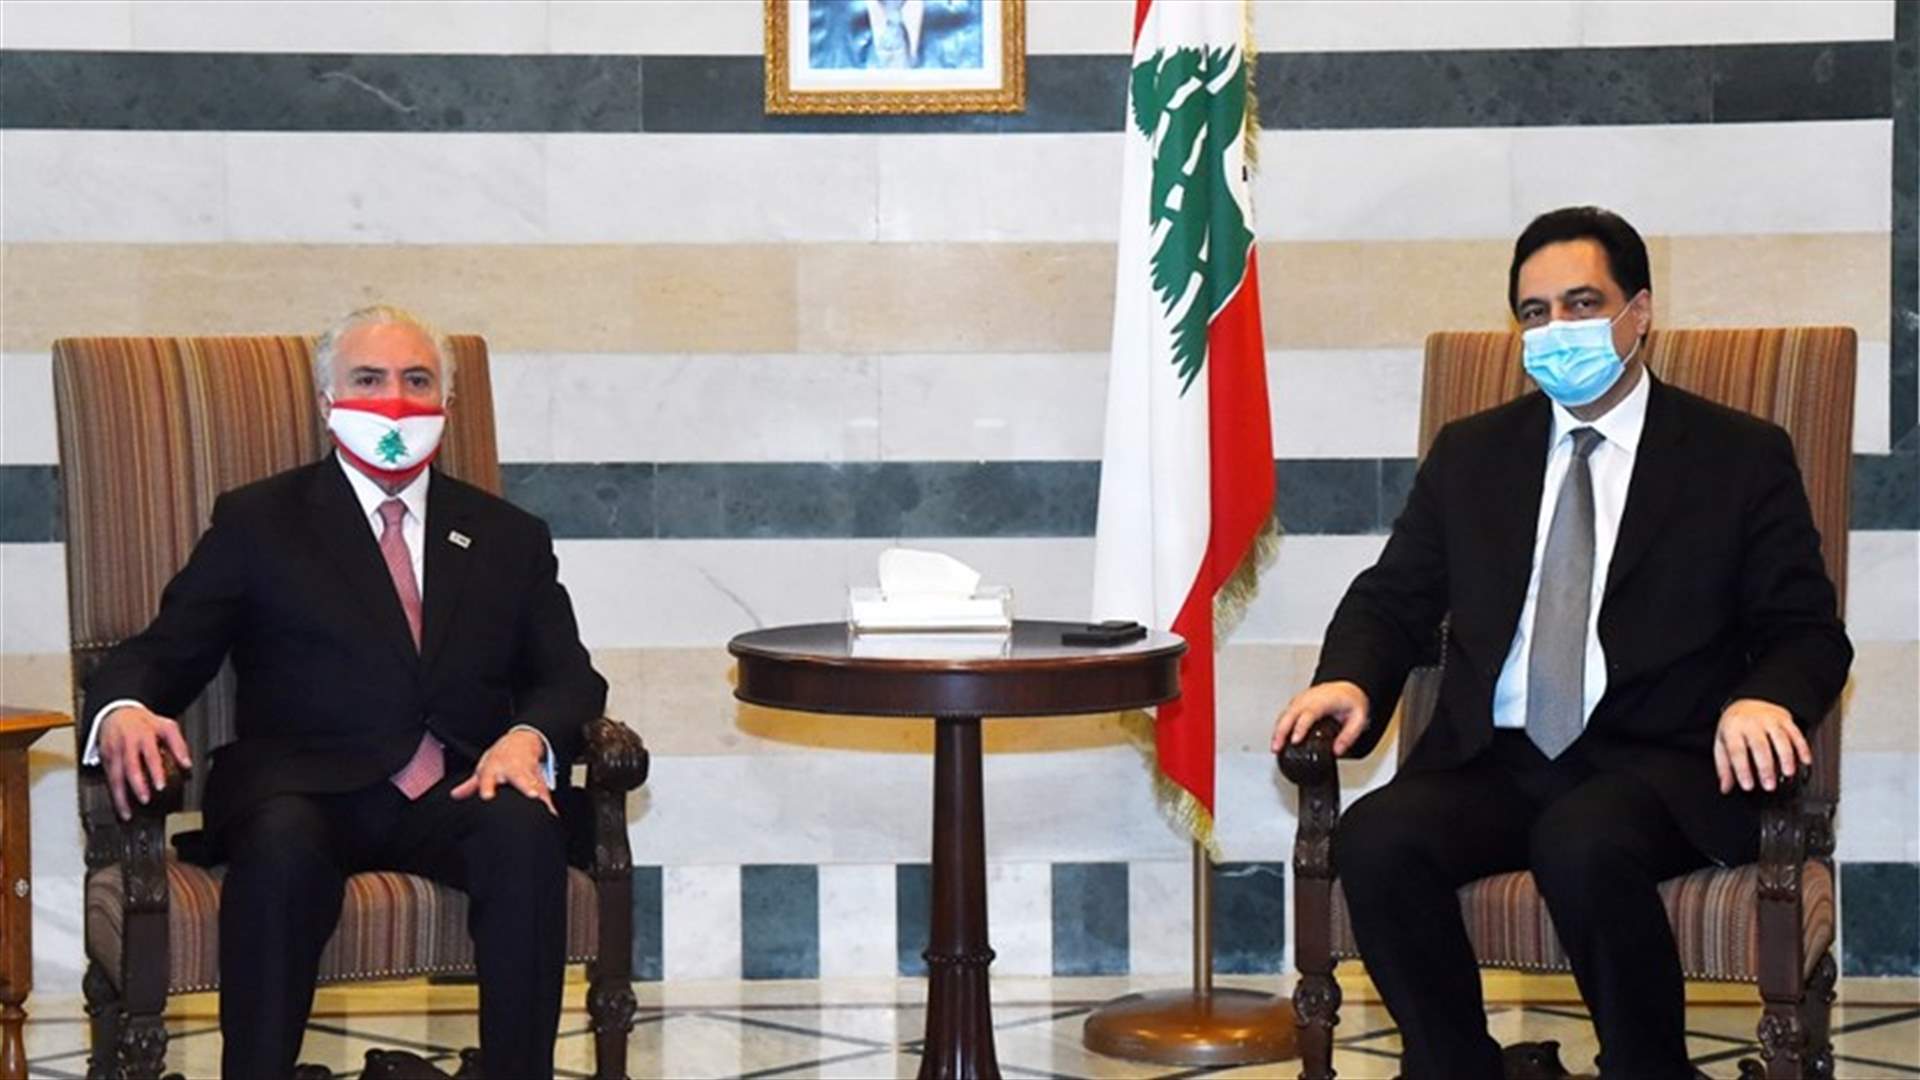 دياب التقى تامر وتأكيد على تضامن الشعب البرازيلي مع اللبنانيين